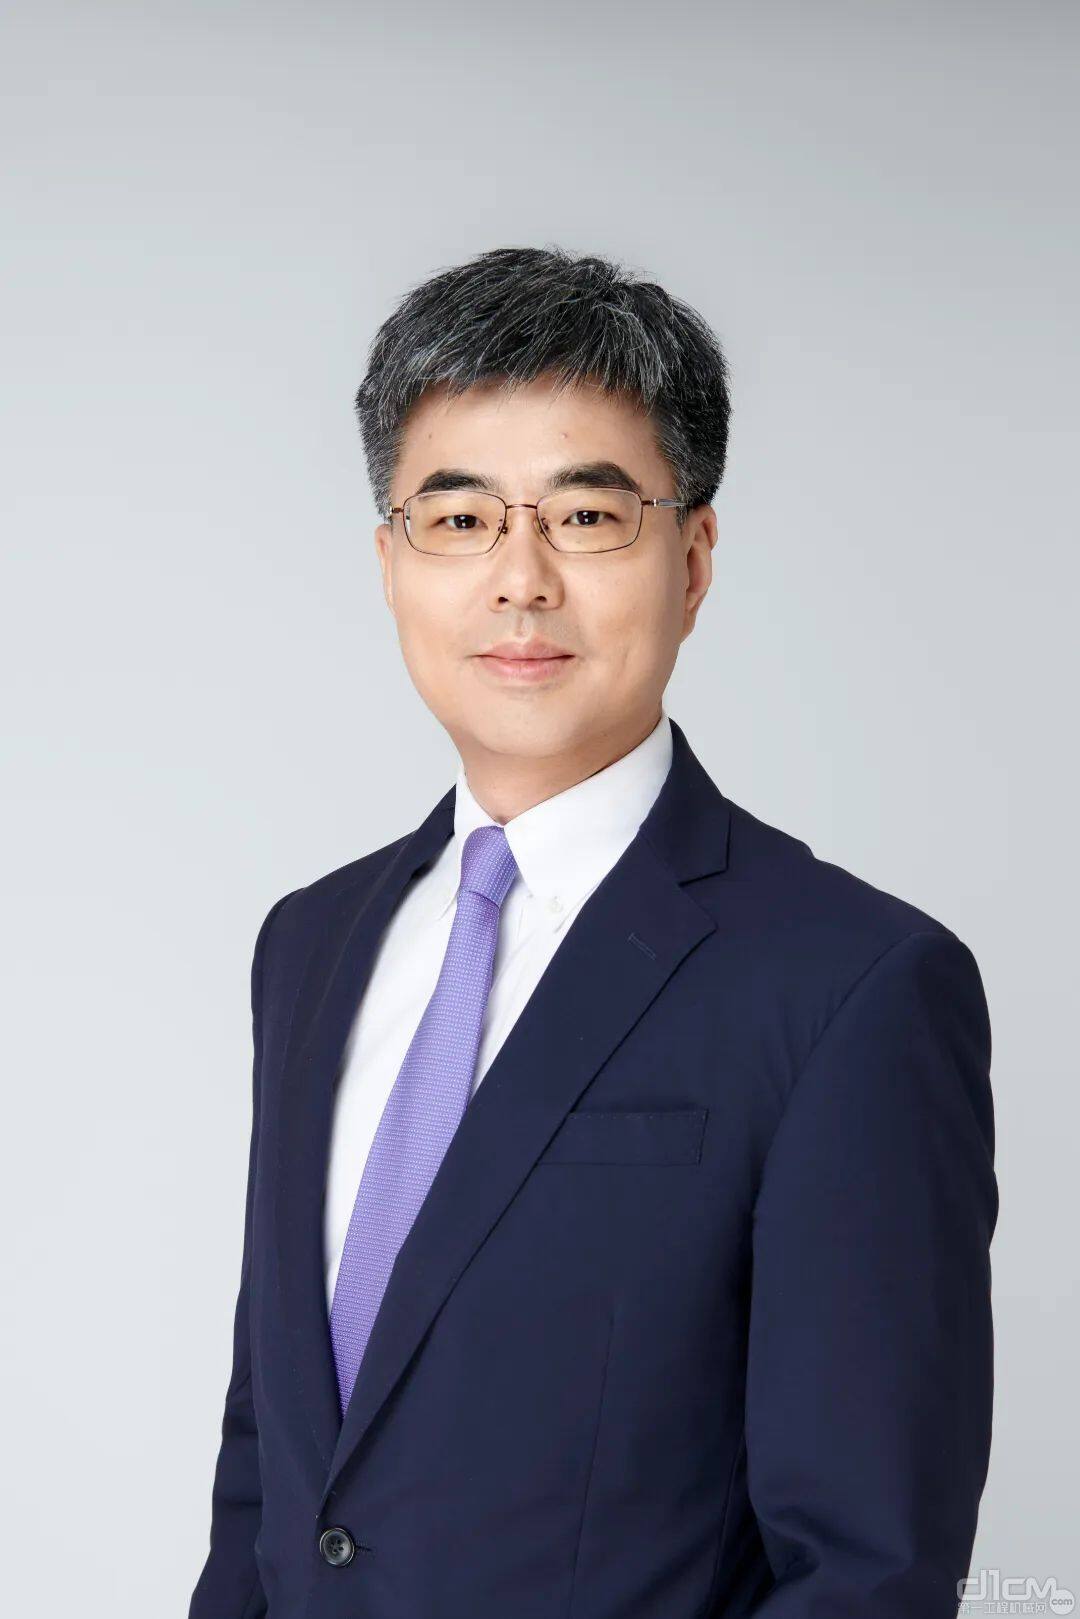 埃克森美孚中国润滑油业务董事总经理岳春阳